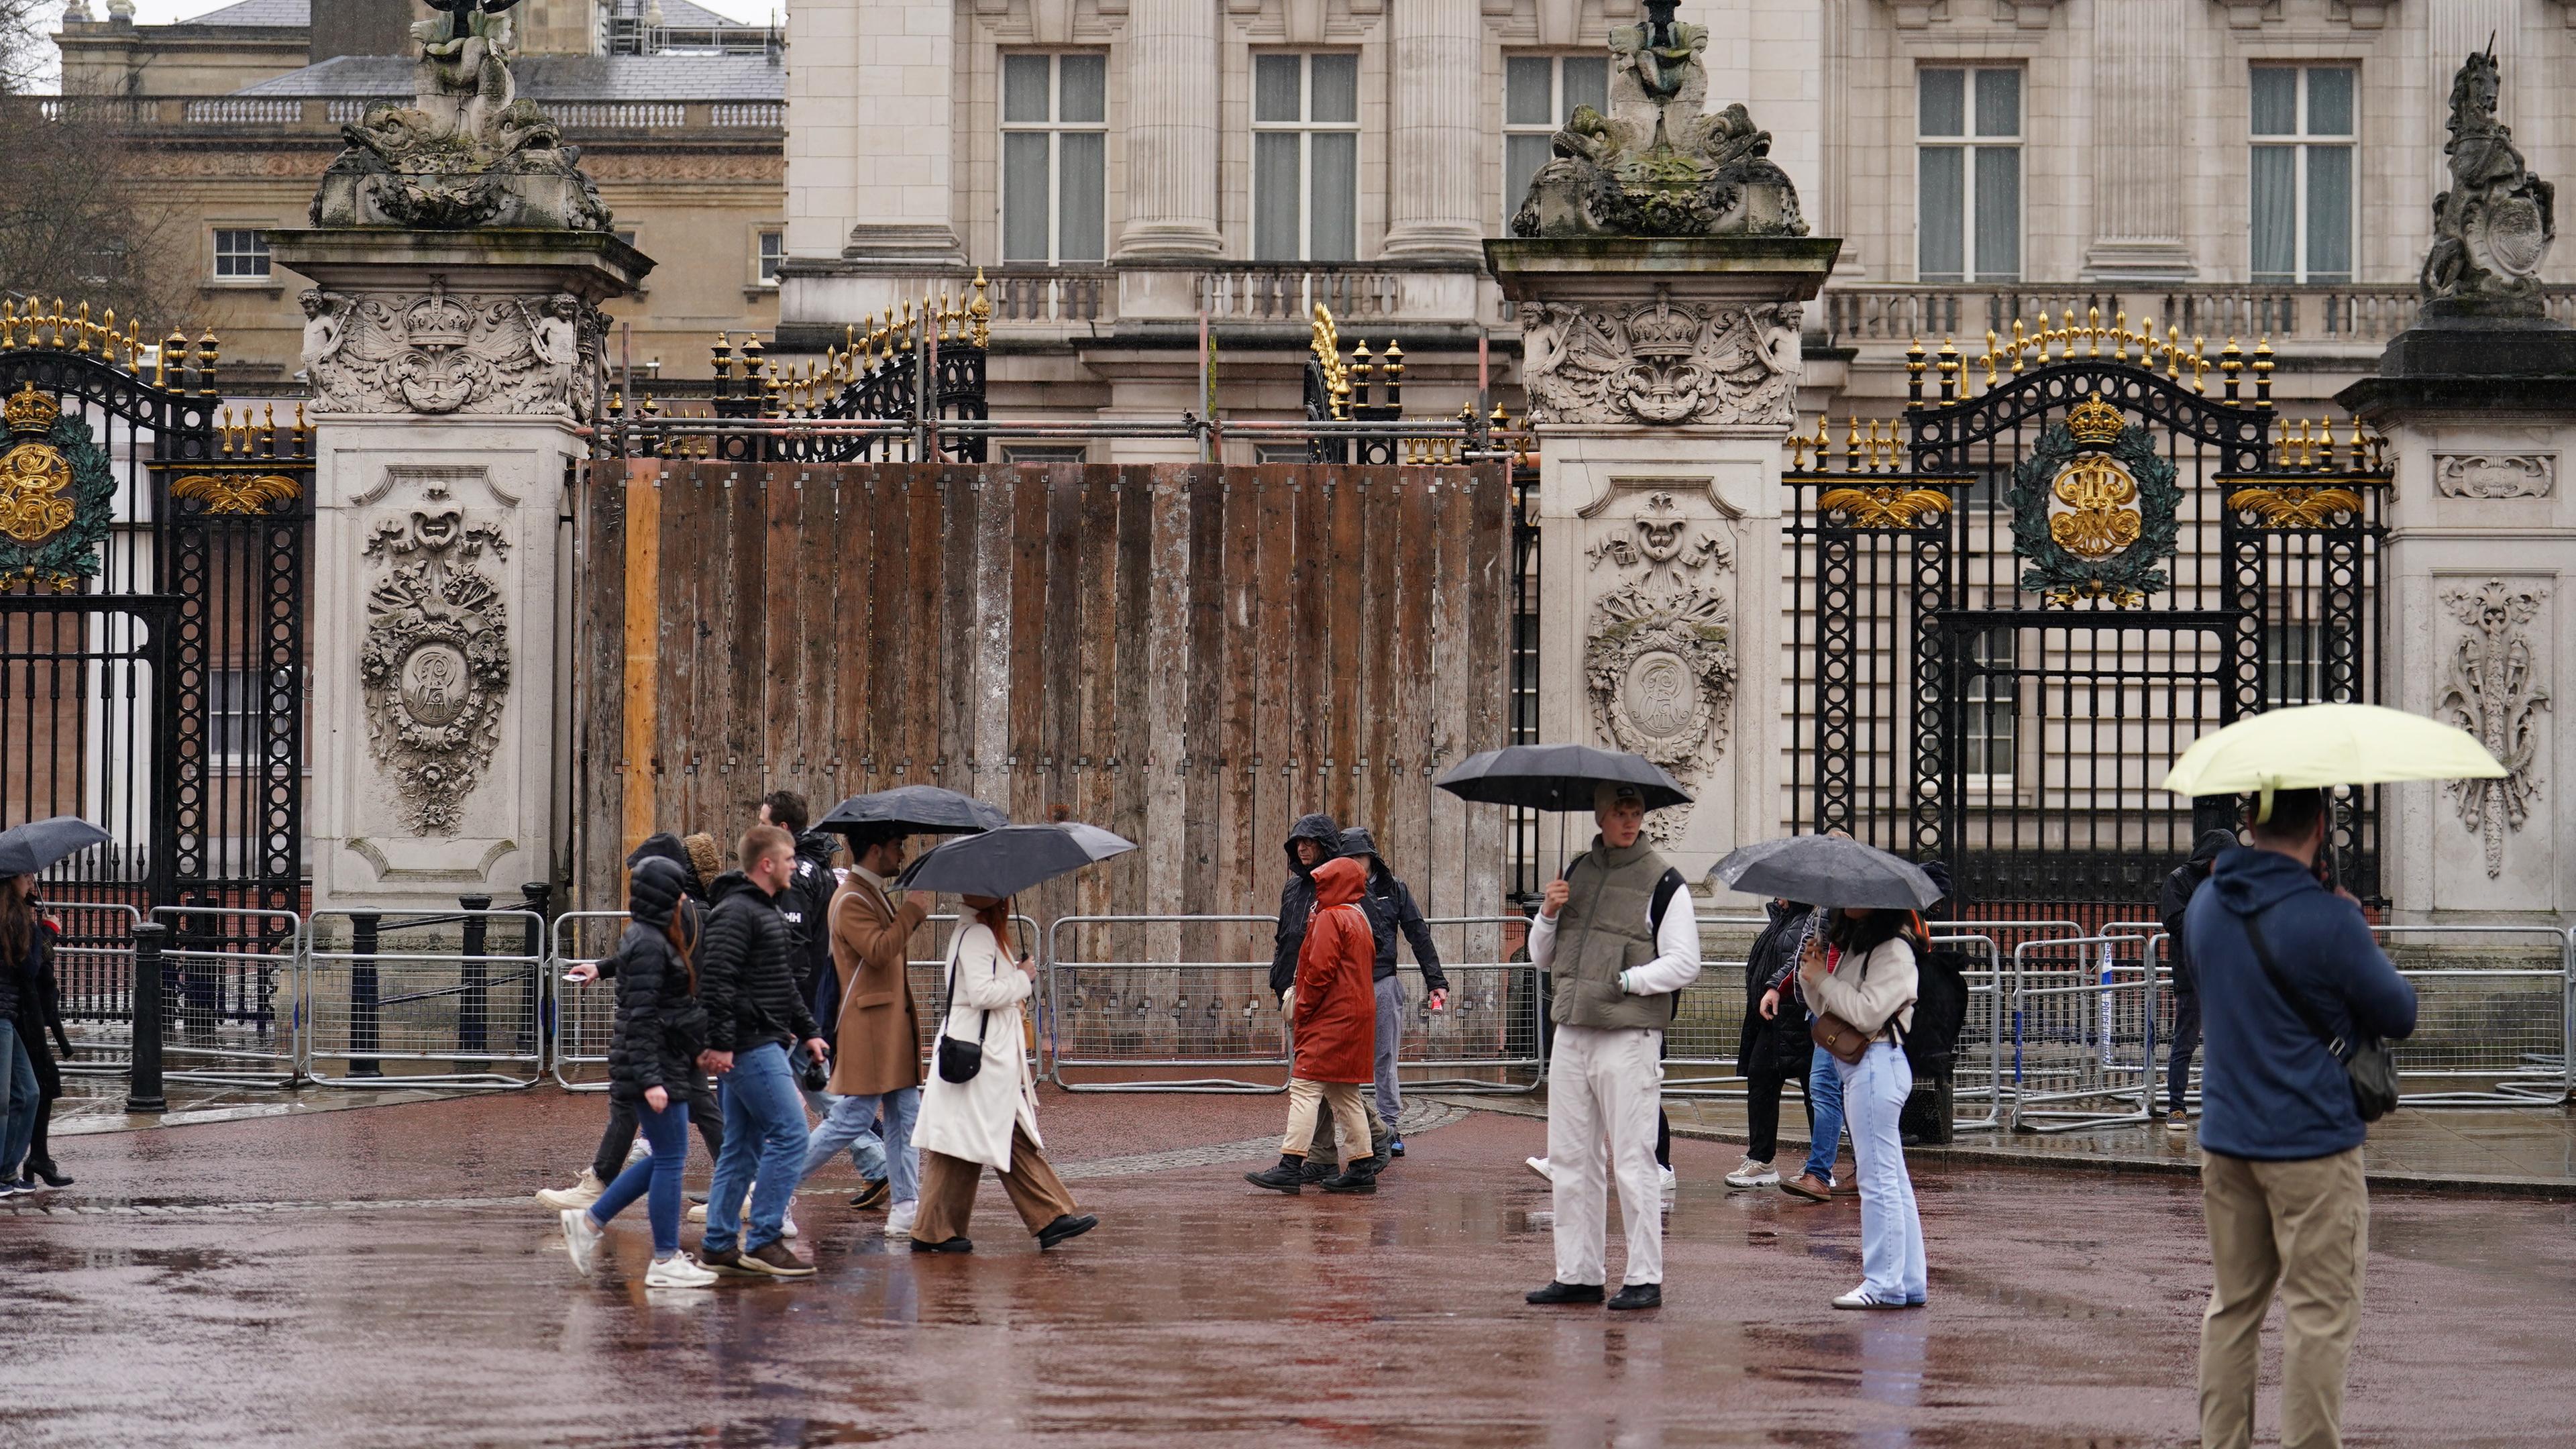 Großbritannien, London: Ein Tor des Buckingham-Palasts ist notdürftig repariert, nachdem ein Auto in den Zaun gekracht war.